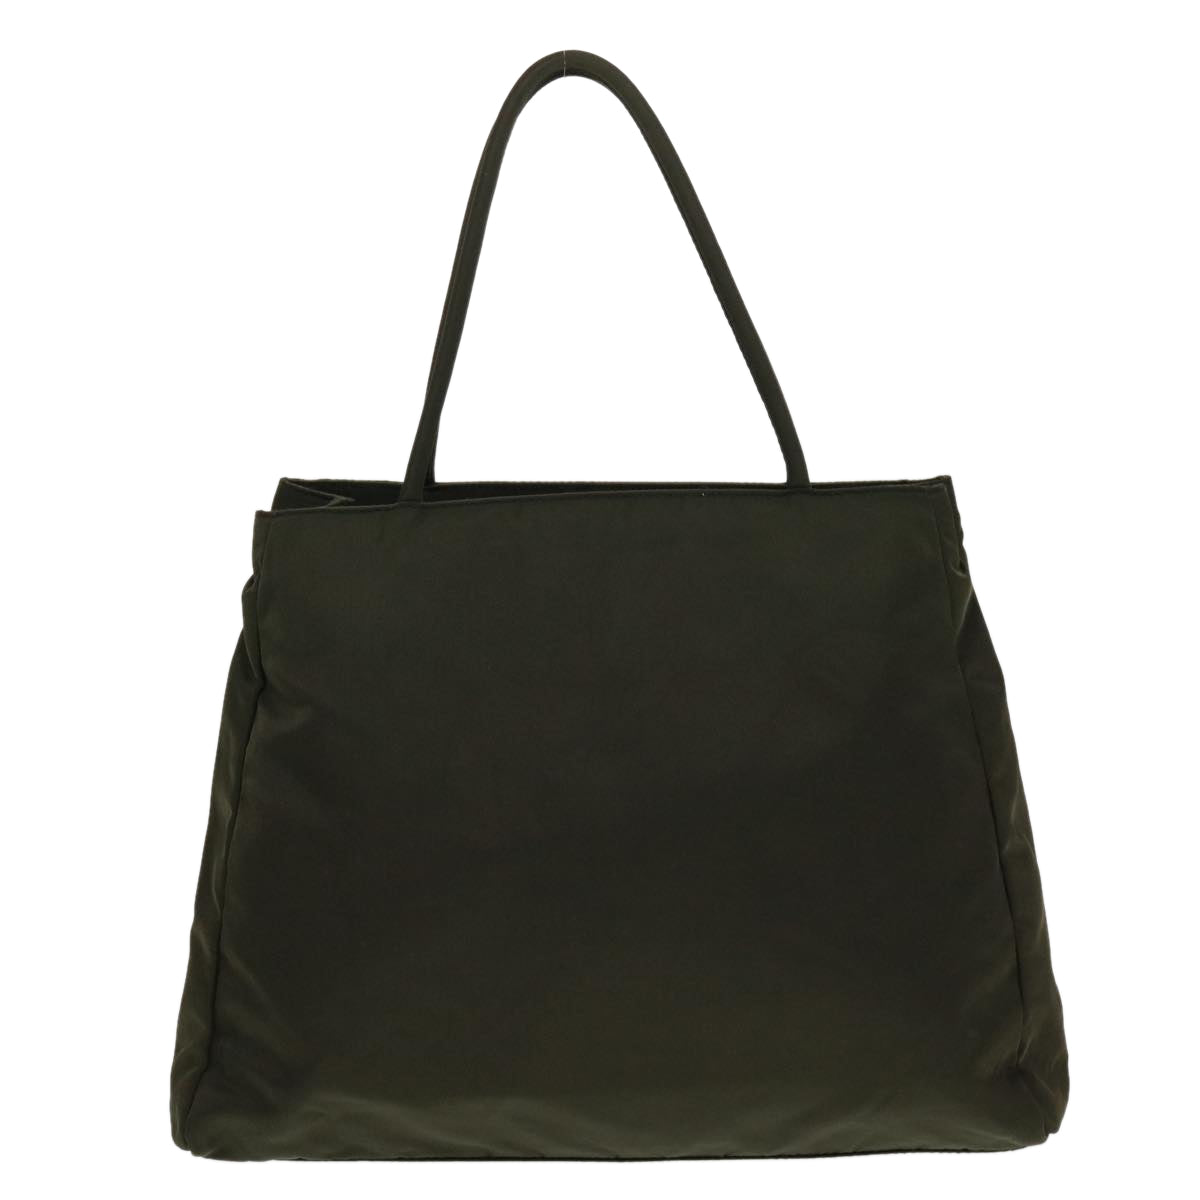 PRADA Tote Bag Nylon Khaki Auth bs5843 - 0